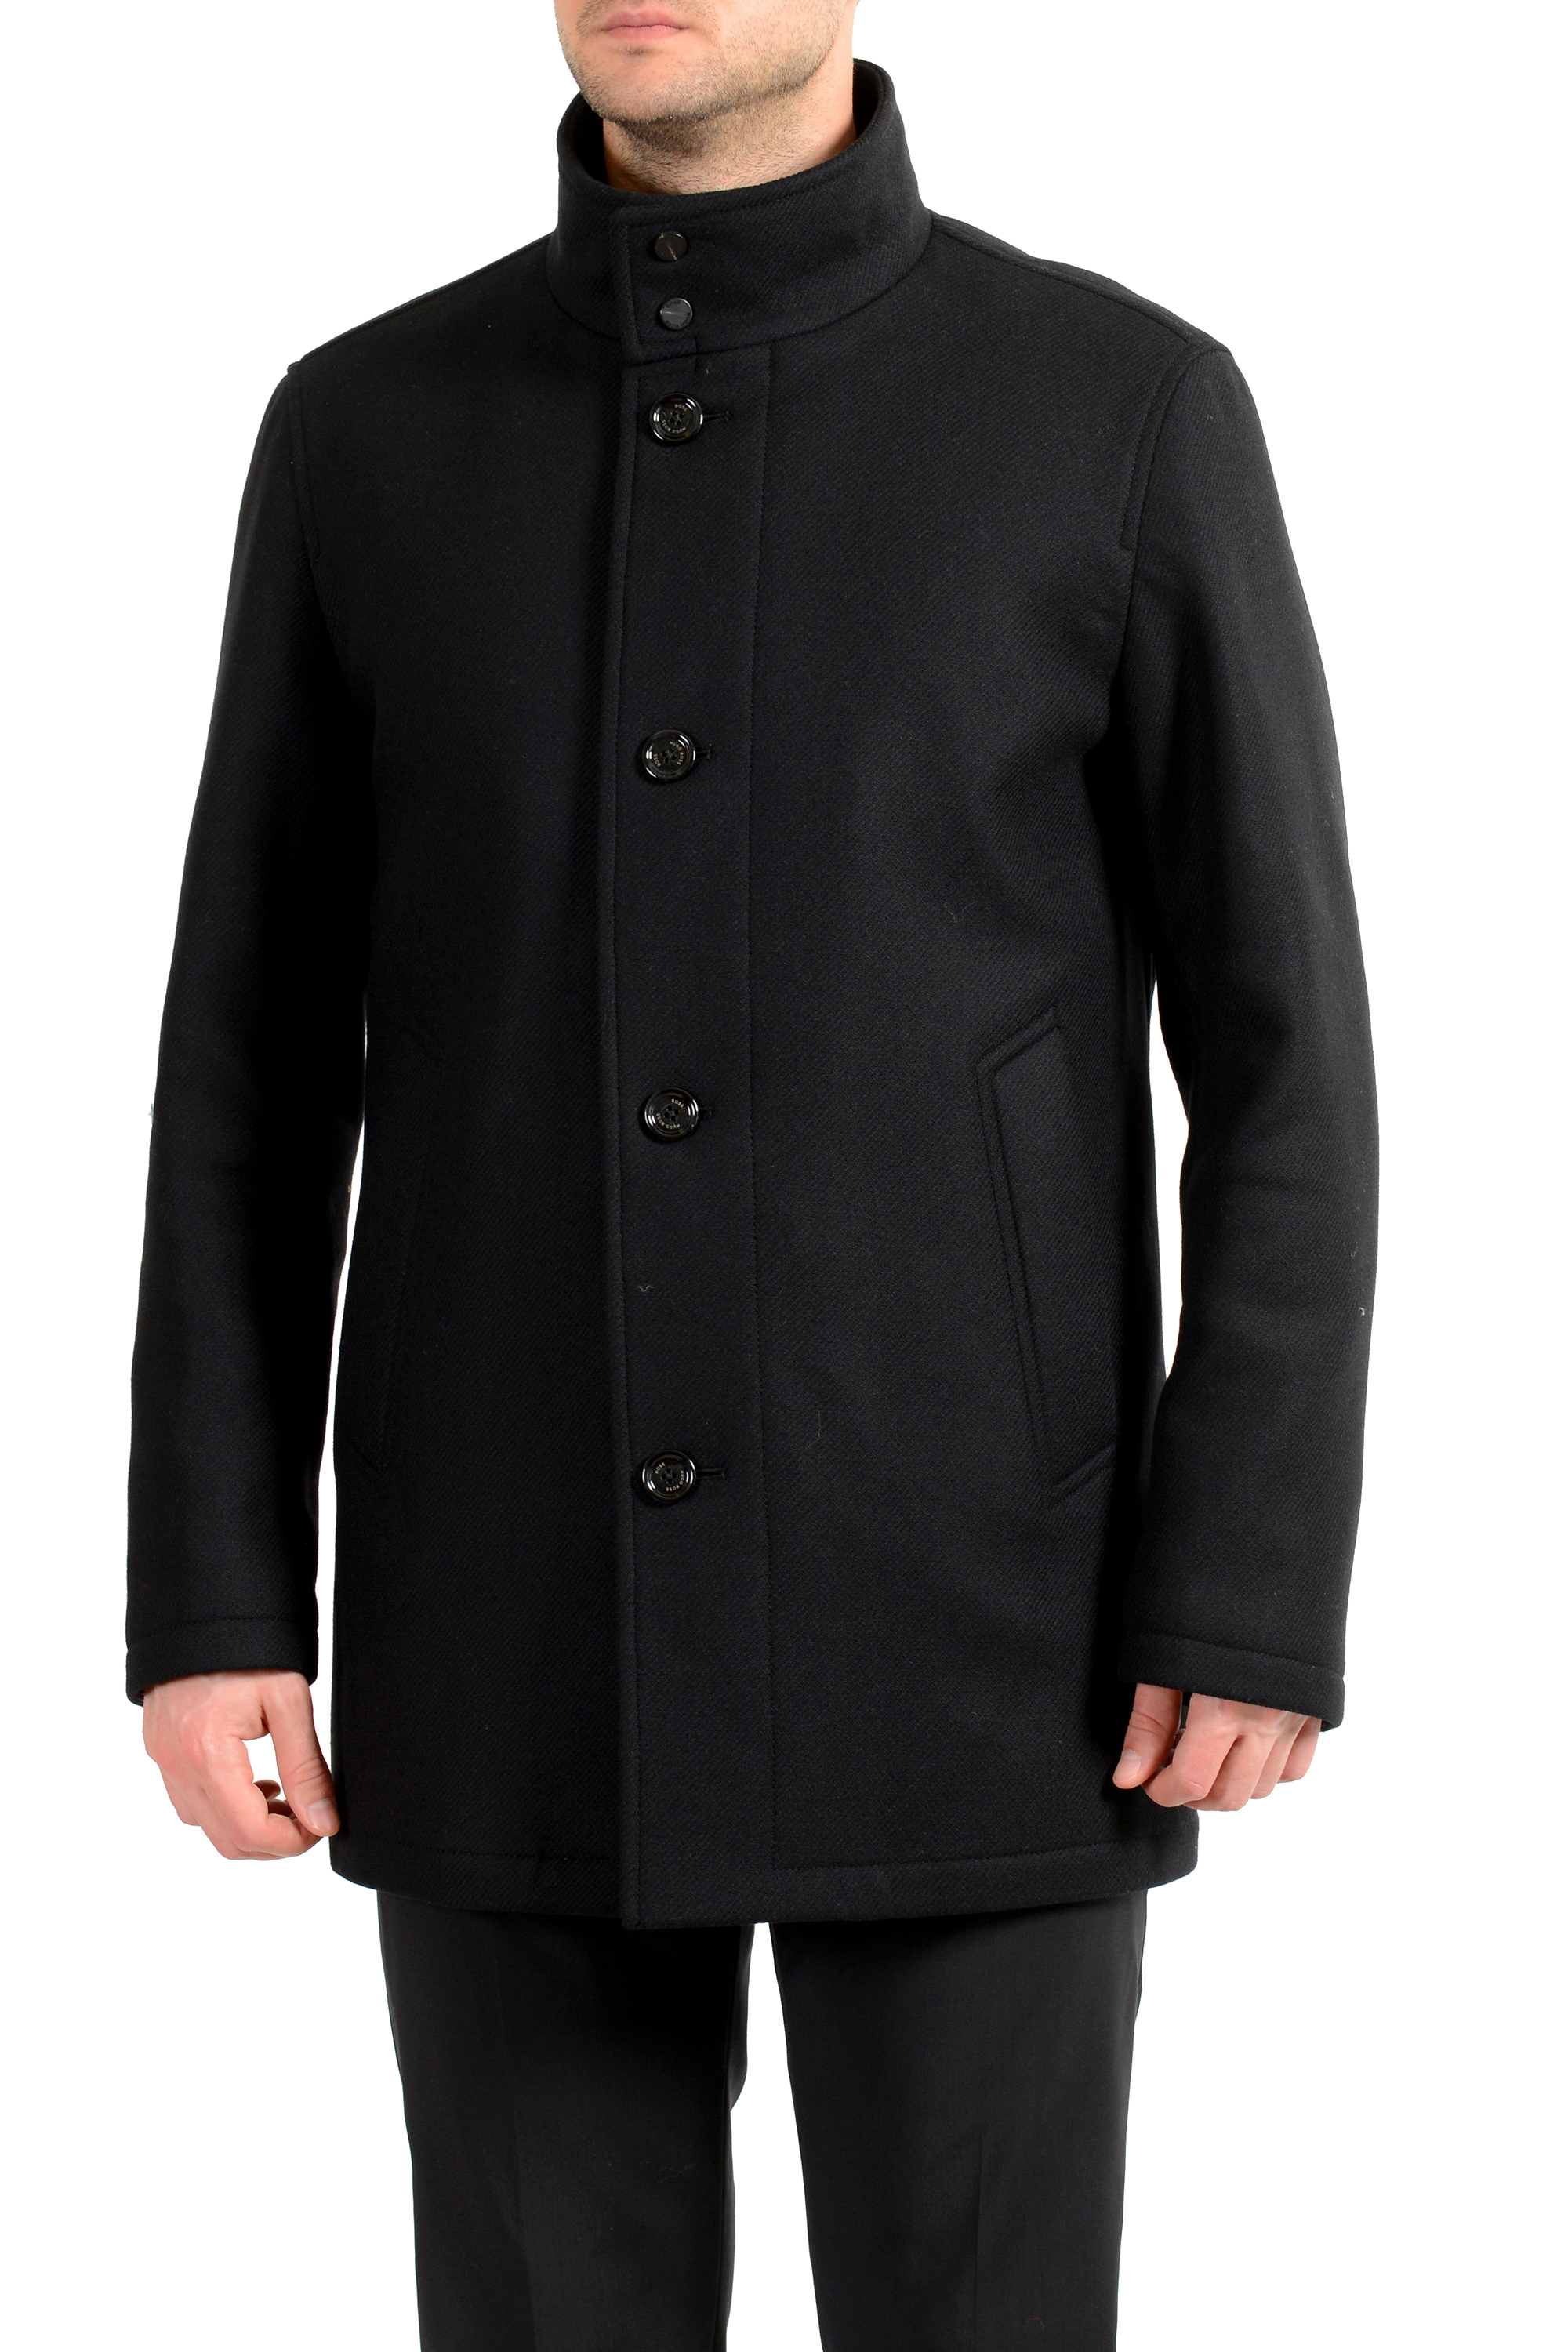 Ingrijpen stormloop voorspelling Hugo Boss Men's "Coxtan9" Black Insulated Wool Cashmere Coat